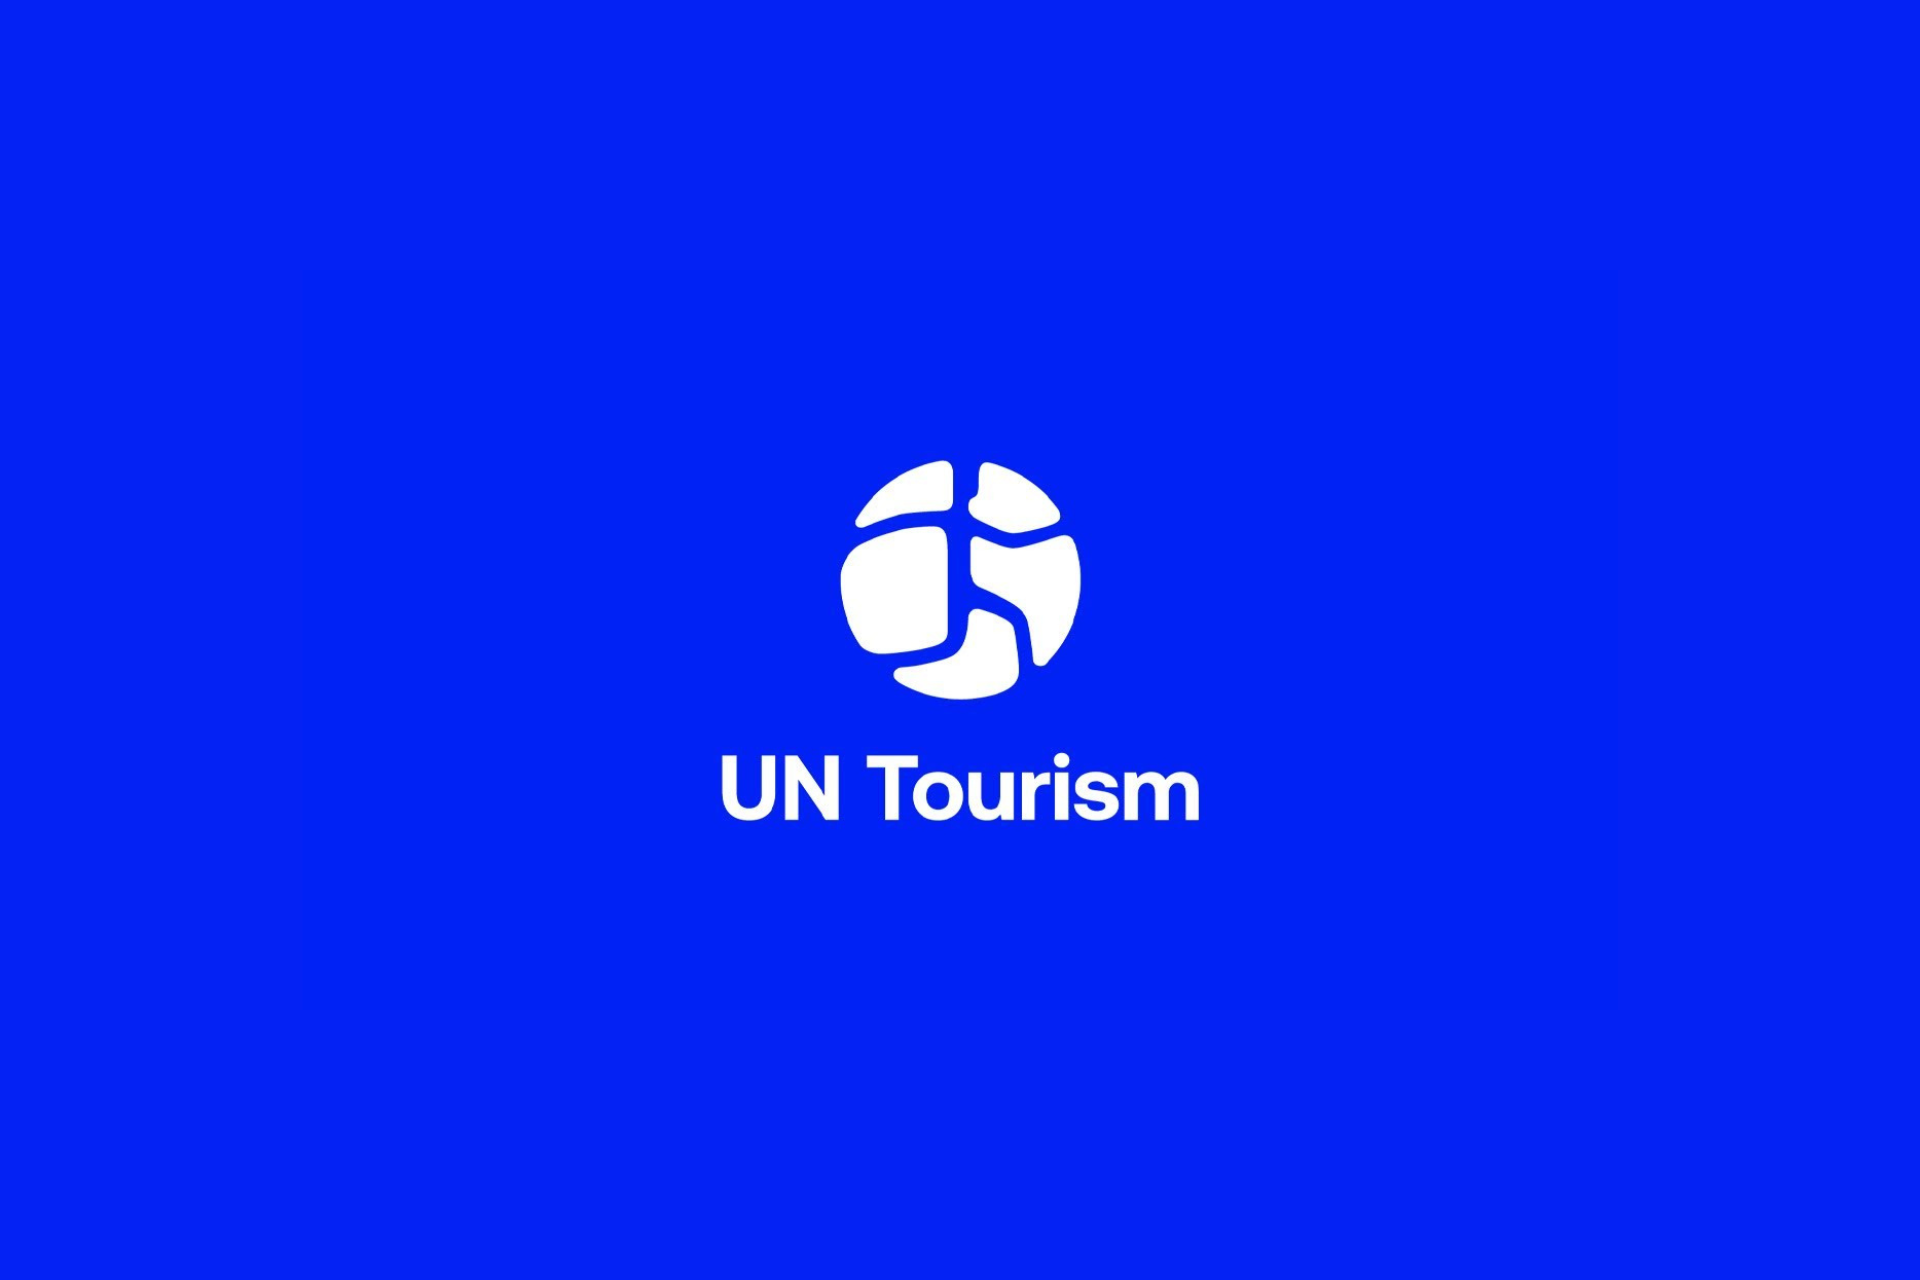 La OMT se convierte en “ONU Turismo” a fin de marcar una nueva era para el sector mundial